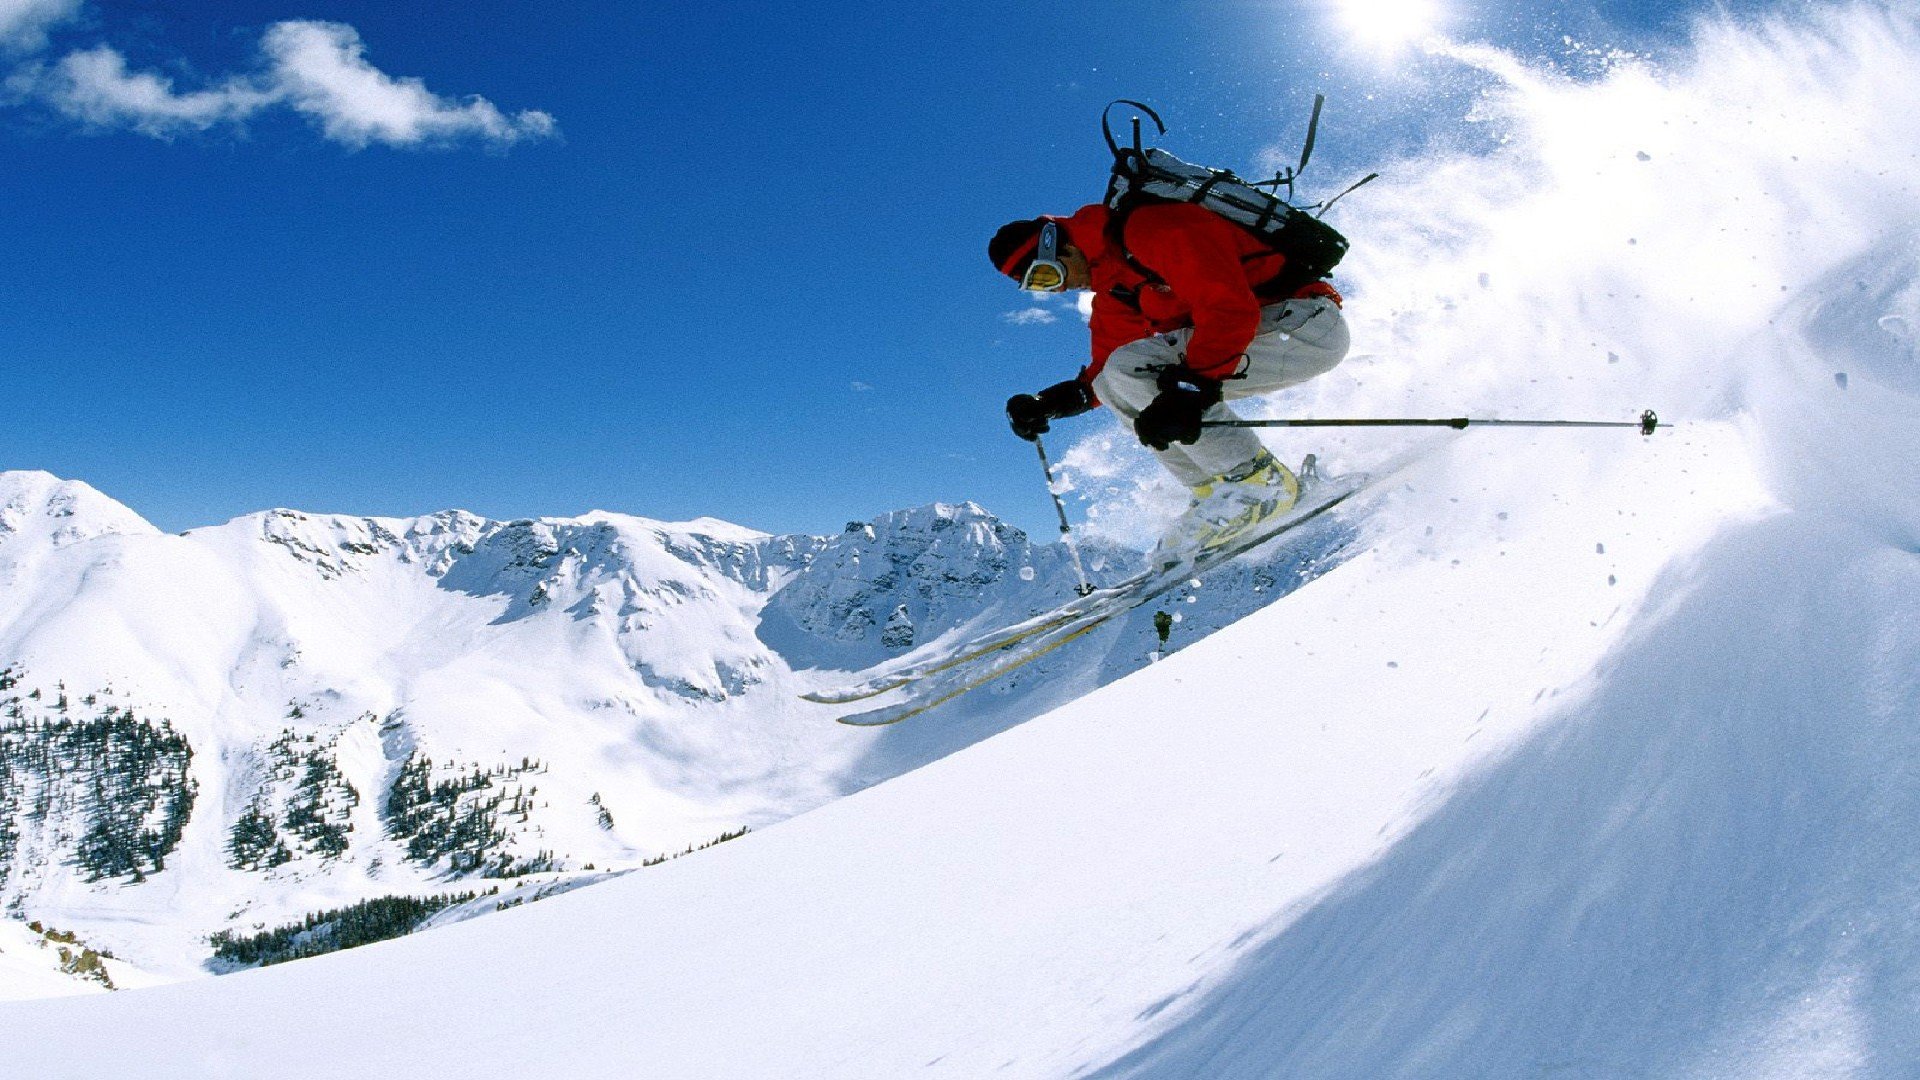 SKIING winter snow ski mountains wallpaper 1920x1080 536269